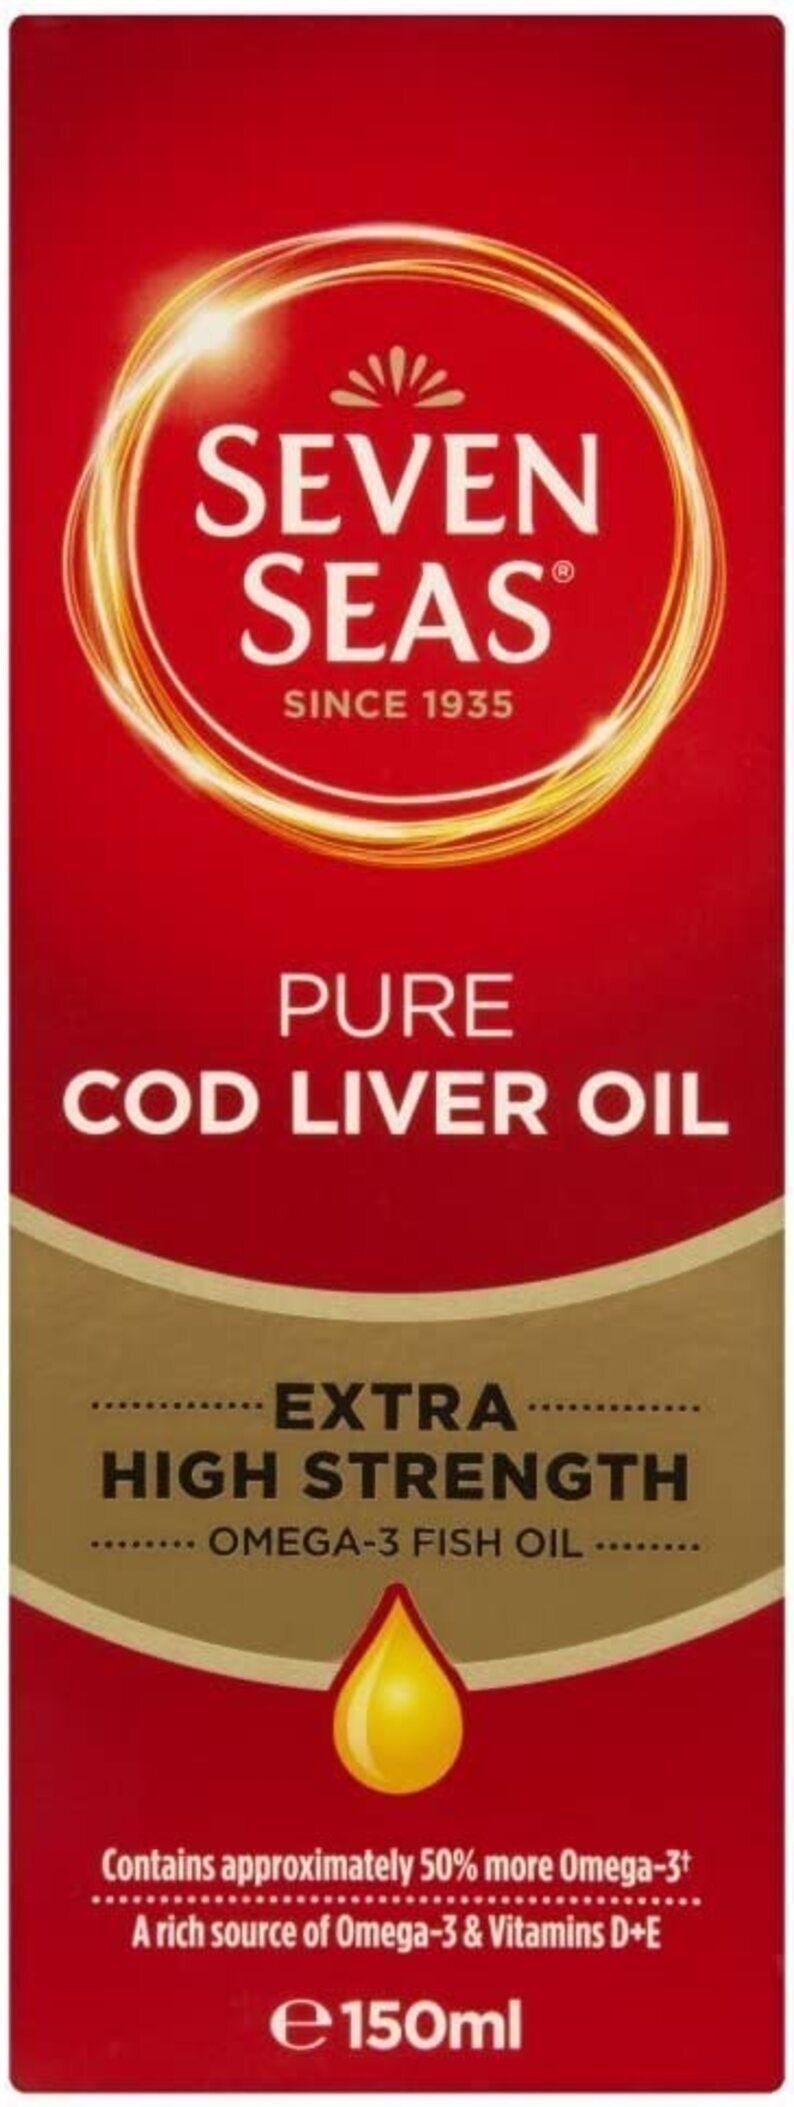 Seven Seas Cod Liver Oil Max Strength - 150ml